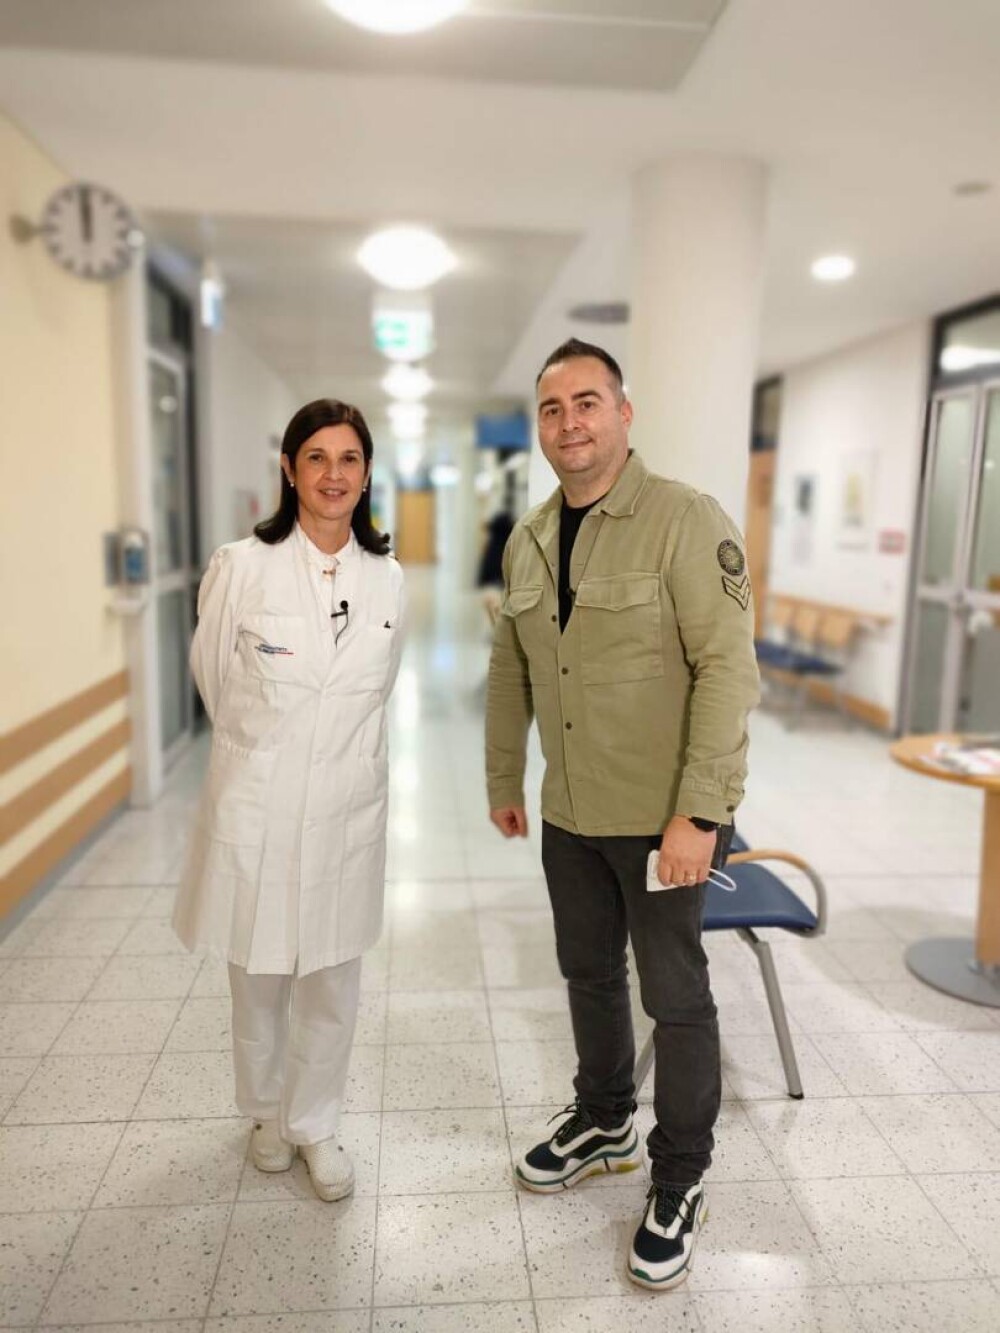 Anca Grosu, românca ce conduce o clinică de radioterapie în Germania: ”Le spun pacienților că suntem în aceeași barcă” - Imaginea 3